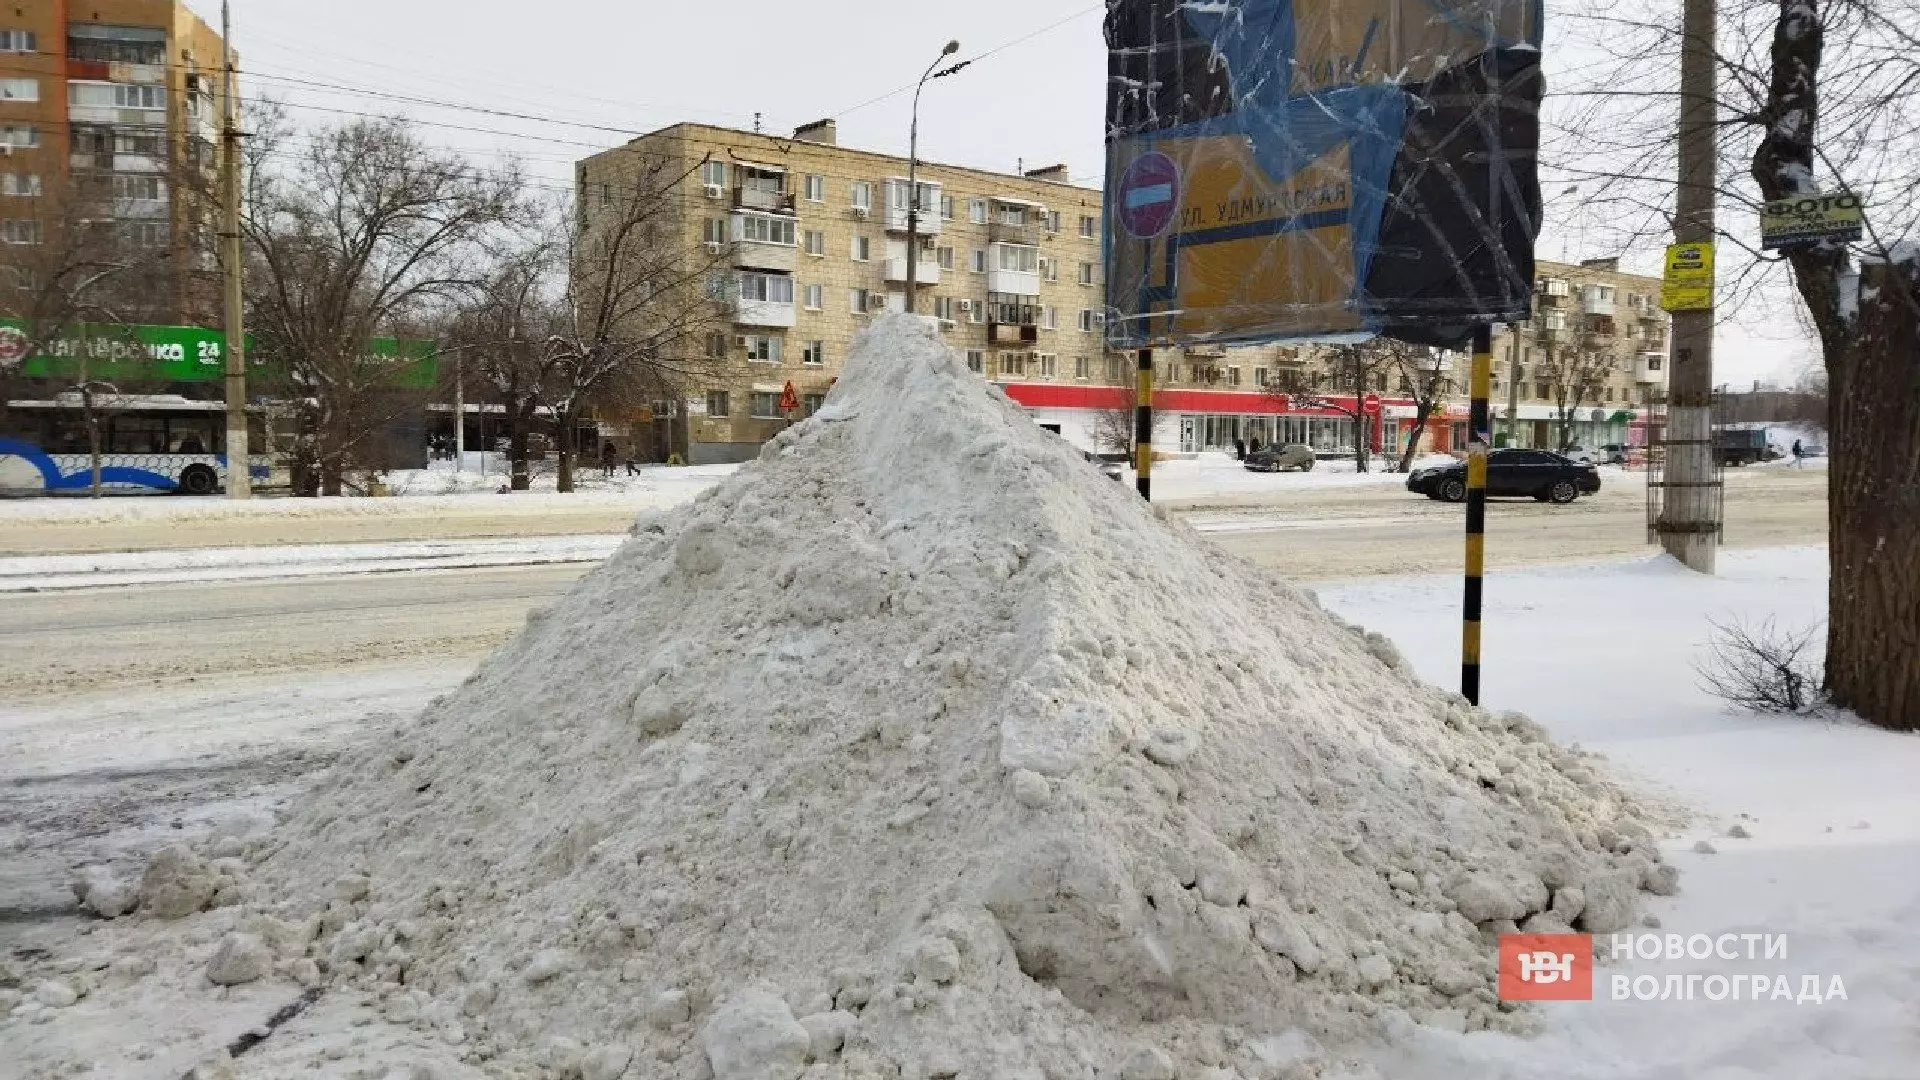 Горы снега в Волгограде принесли кучу проблем